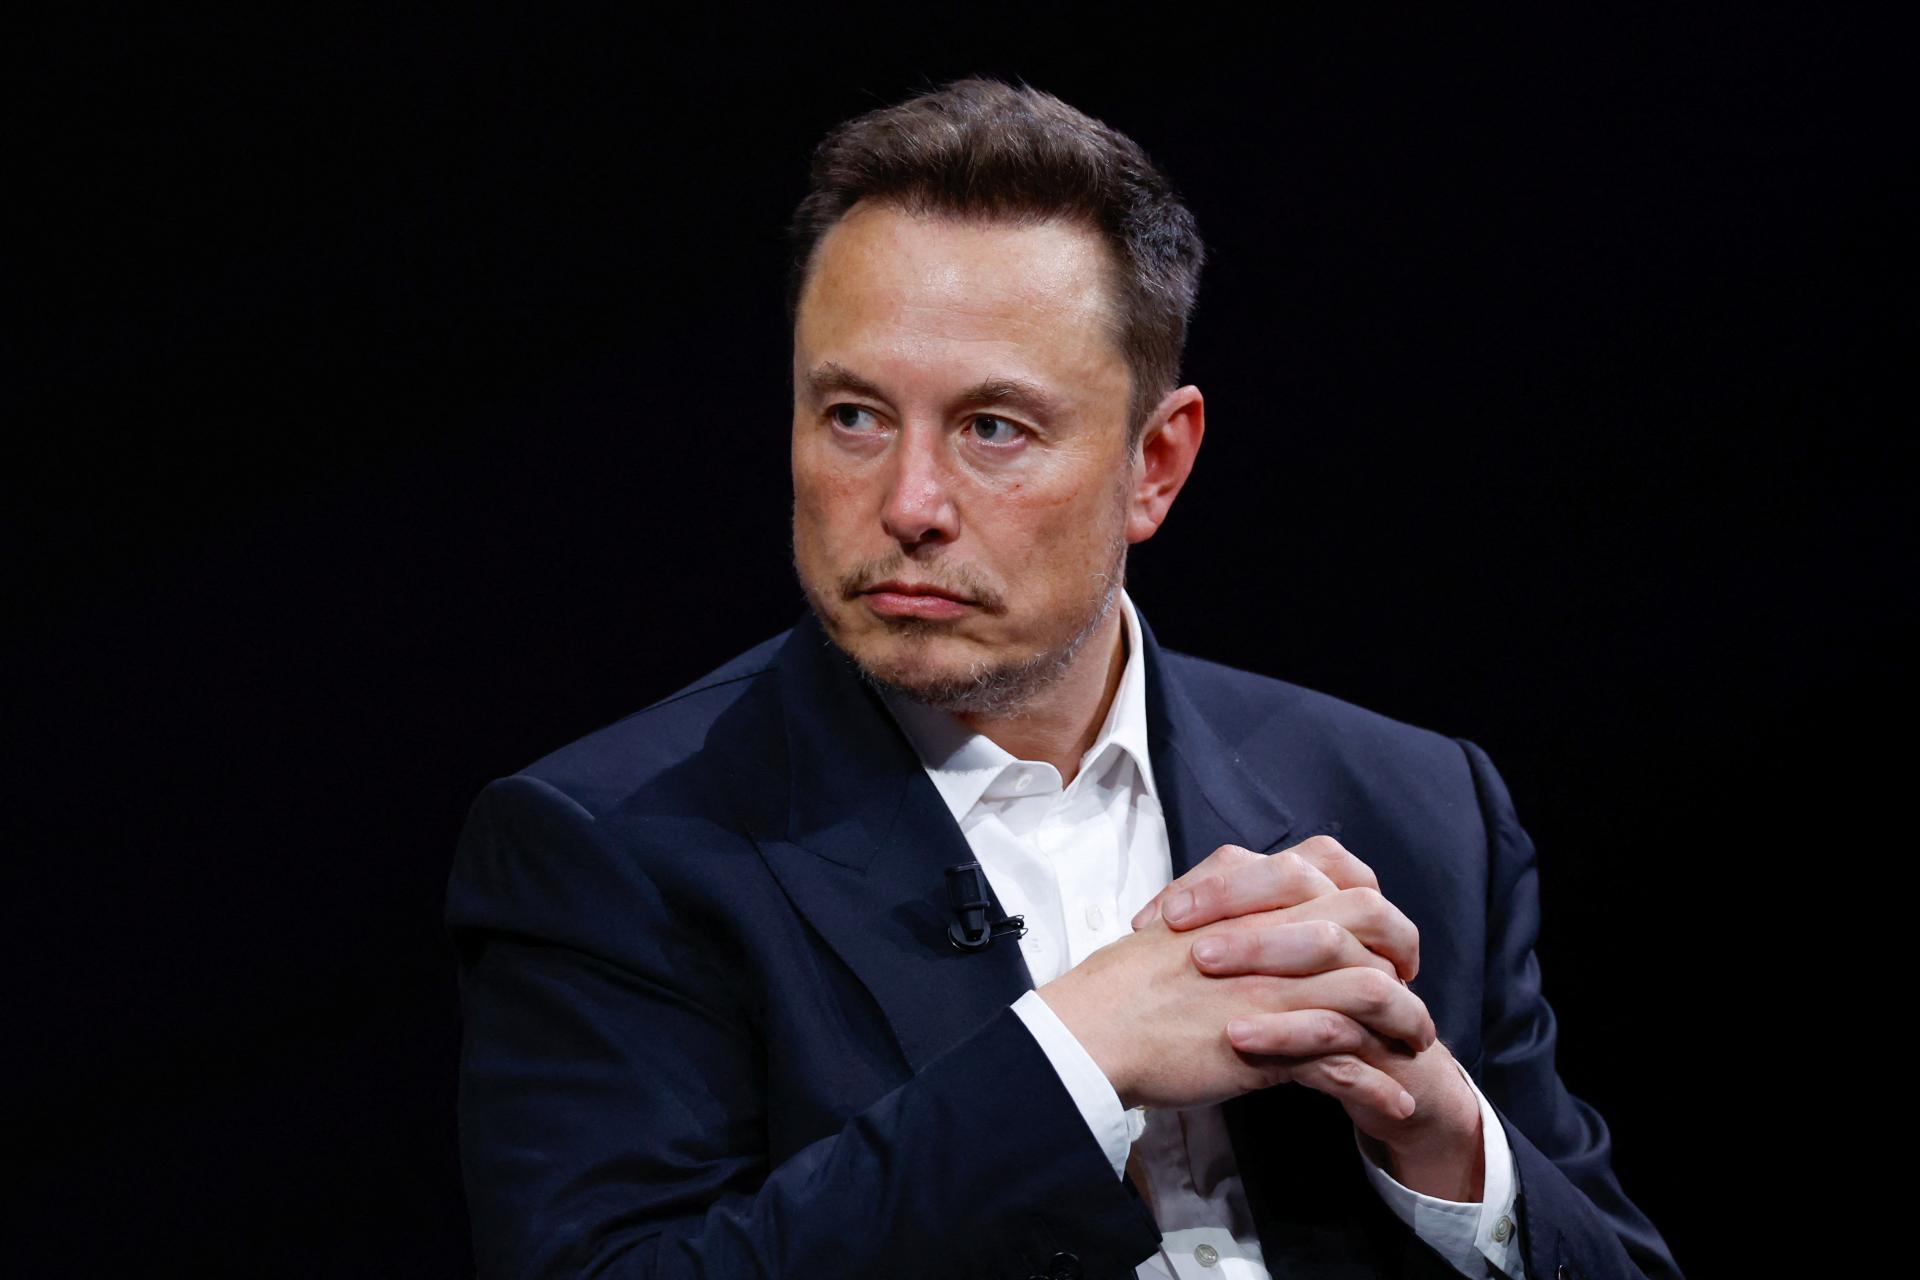 Platforma, ktorá nezvláda nenávistné prejavy. Elon Musk zvažuje, že svoju sieť X stiahne z Európskej únie